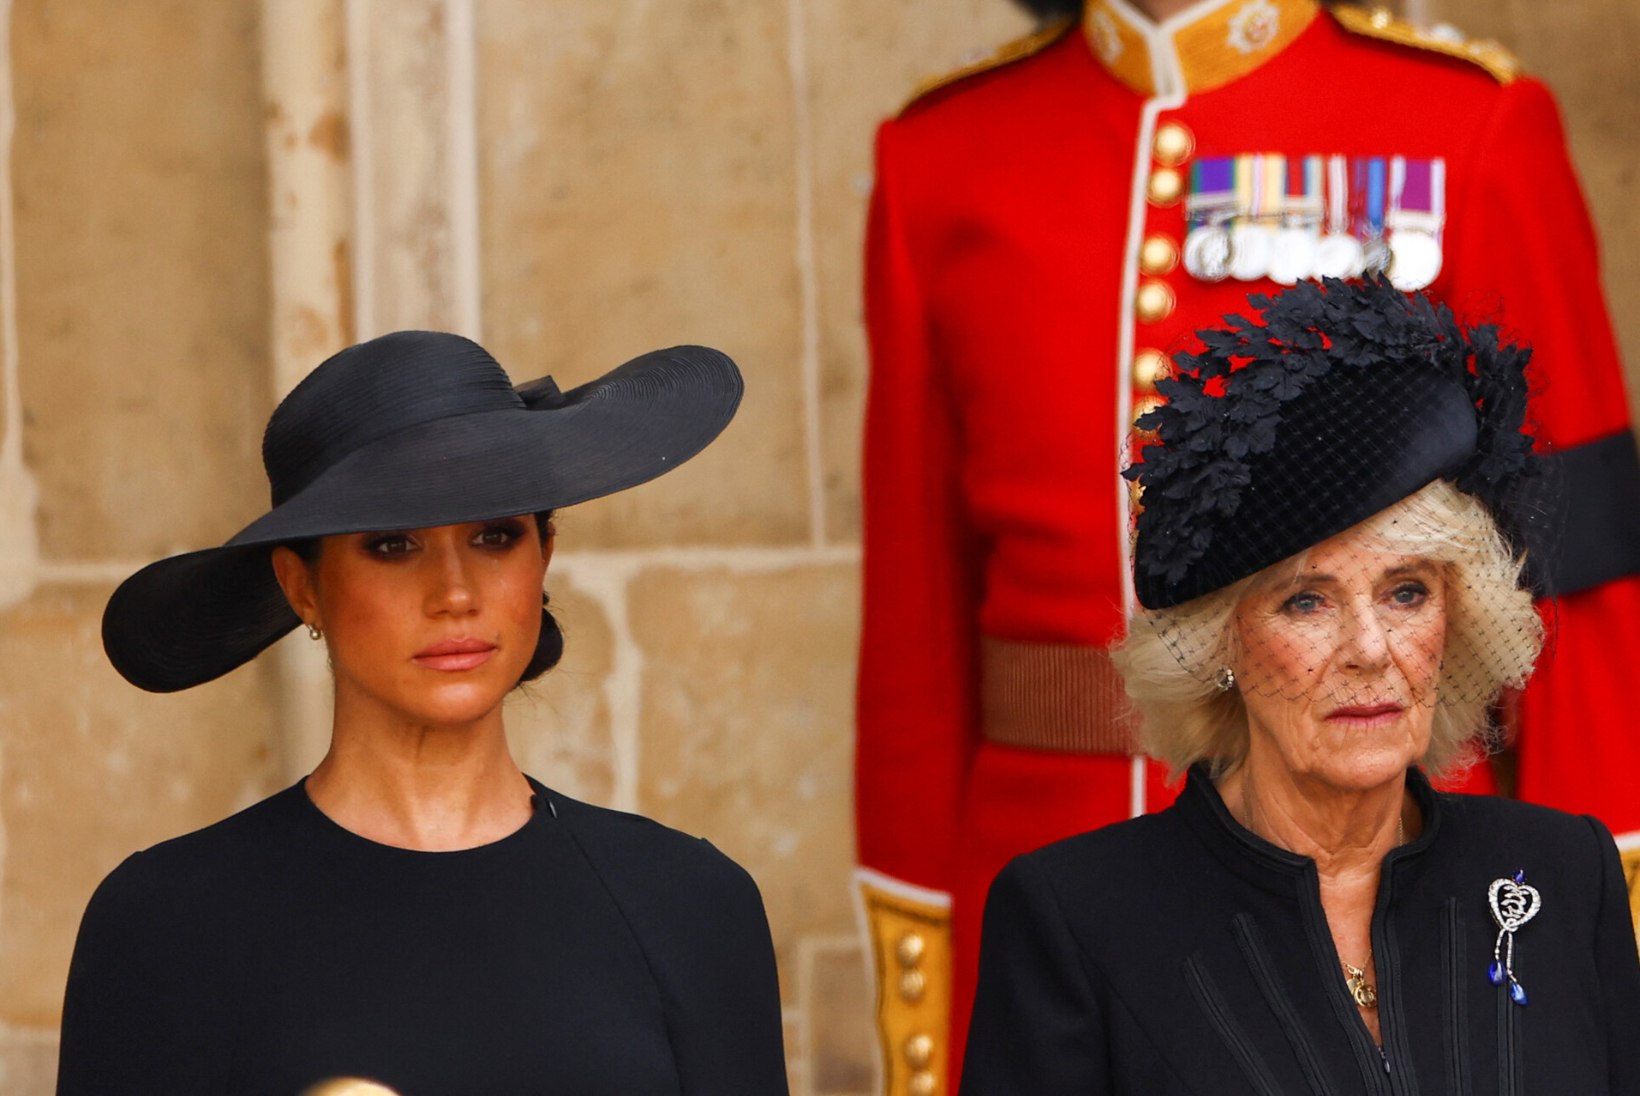 RANGE PROTOKOLL: mida kuningliku perekonna liikmed matusetseremoonial kandsid?